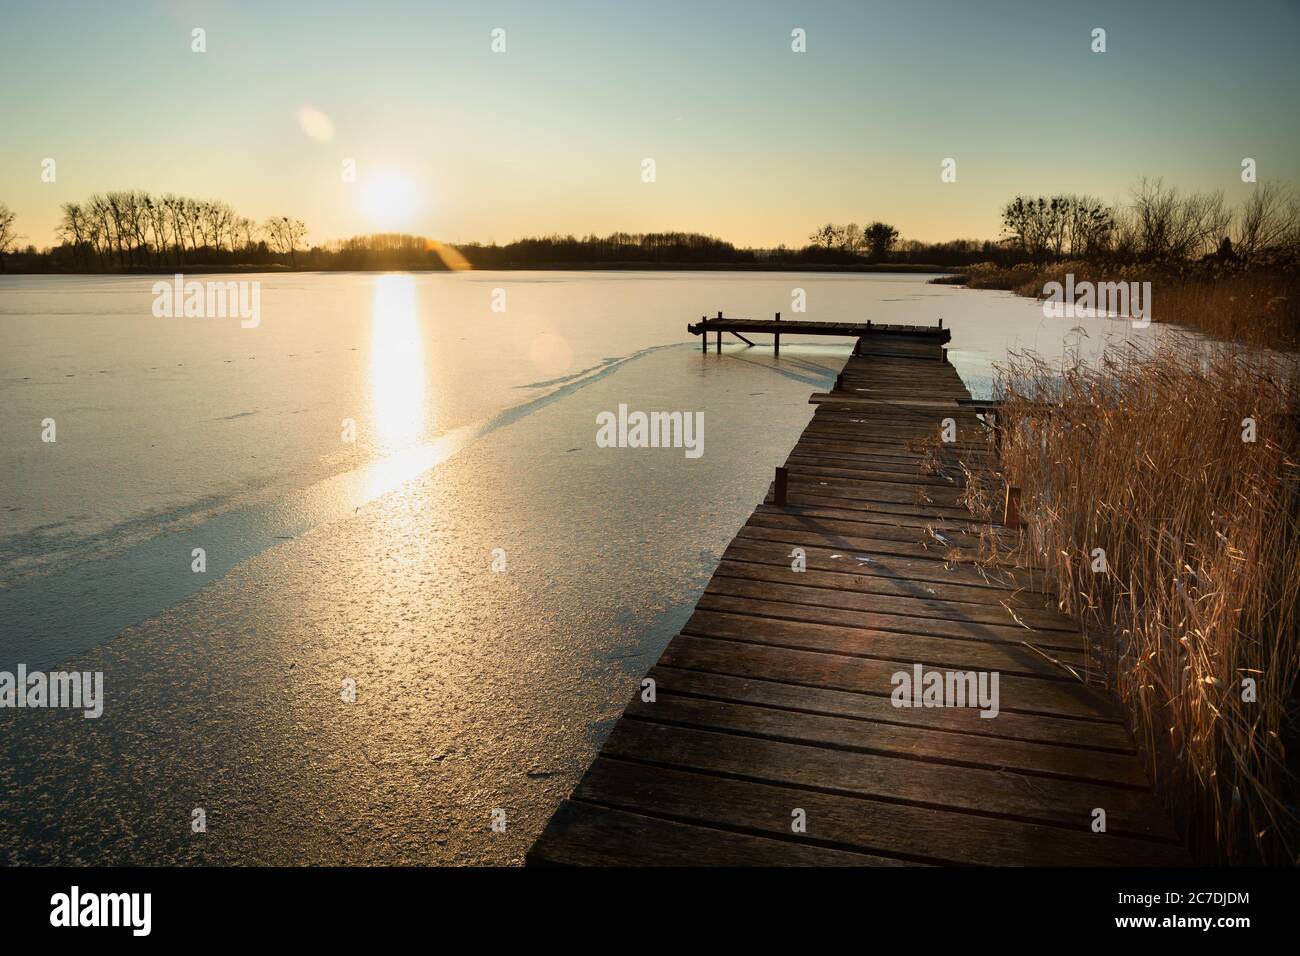 Une plate-forme en bois sur un lac gelé et le soleil sur l'horizon, jour d'hiver ensoleillé Banque D'Images